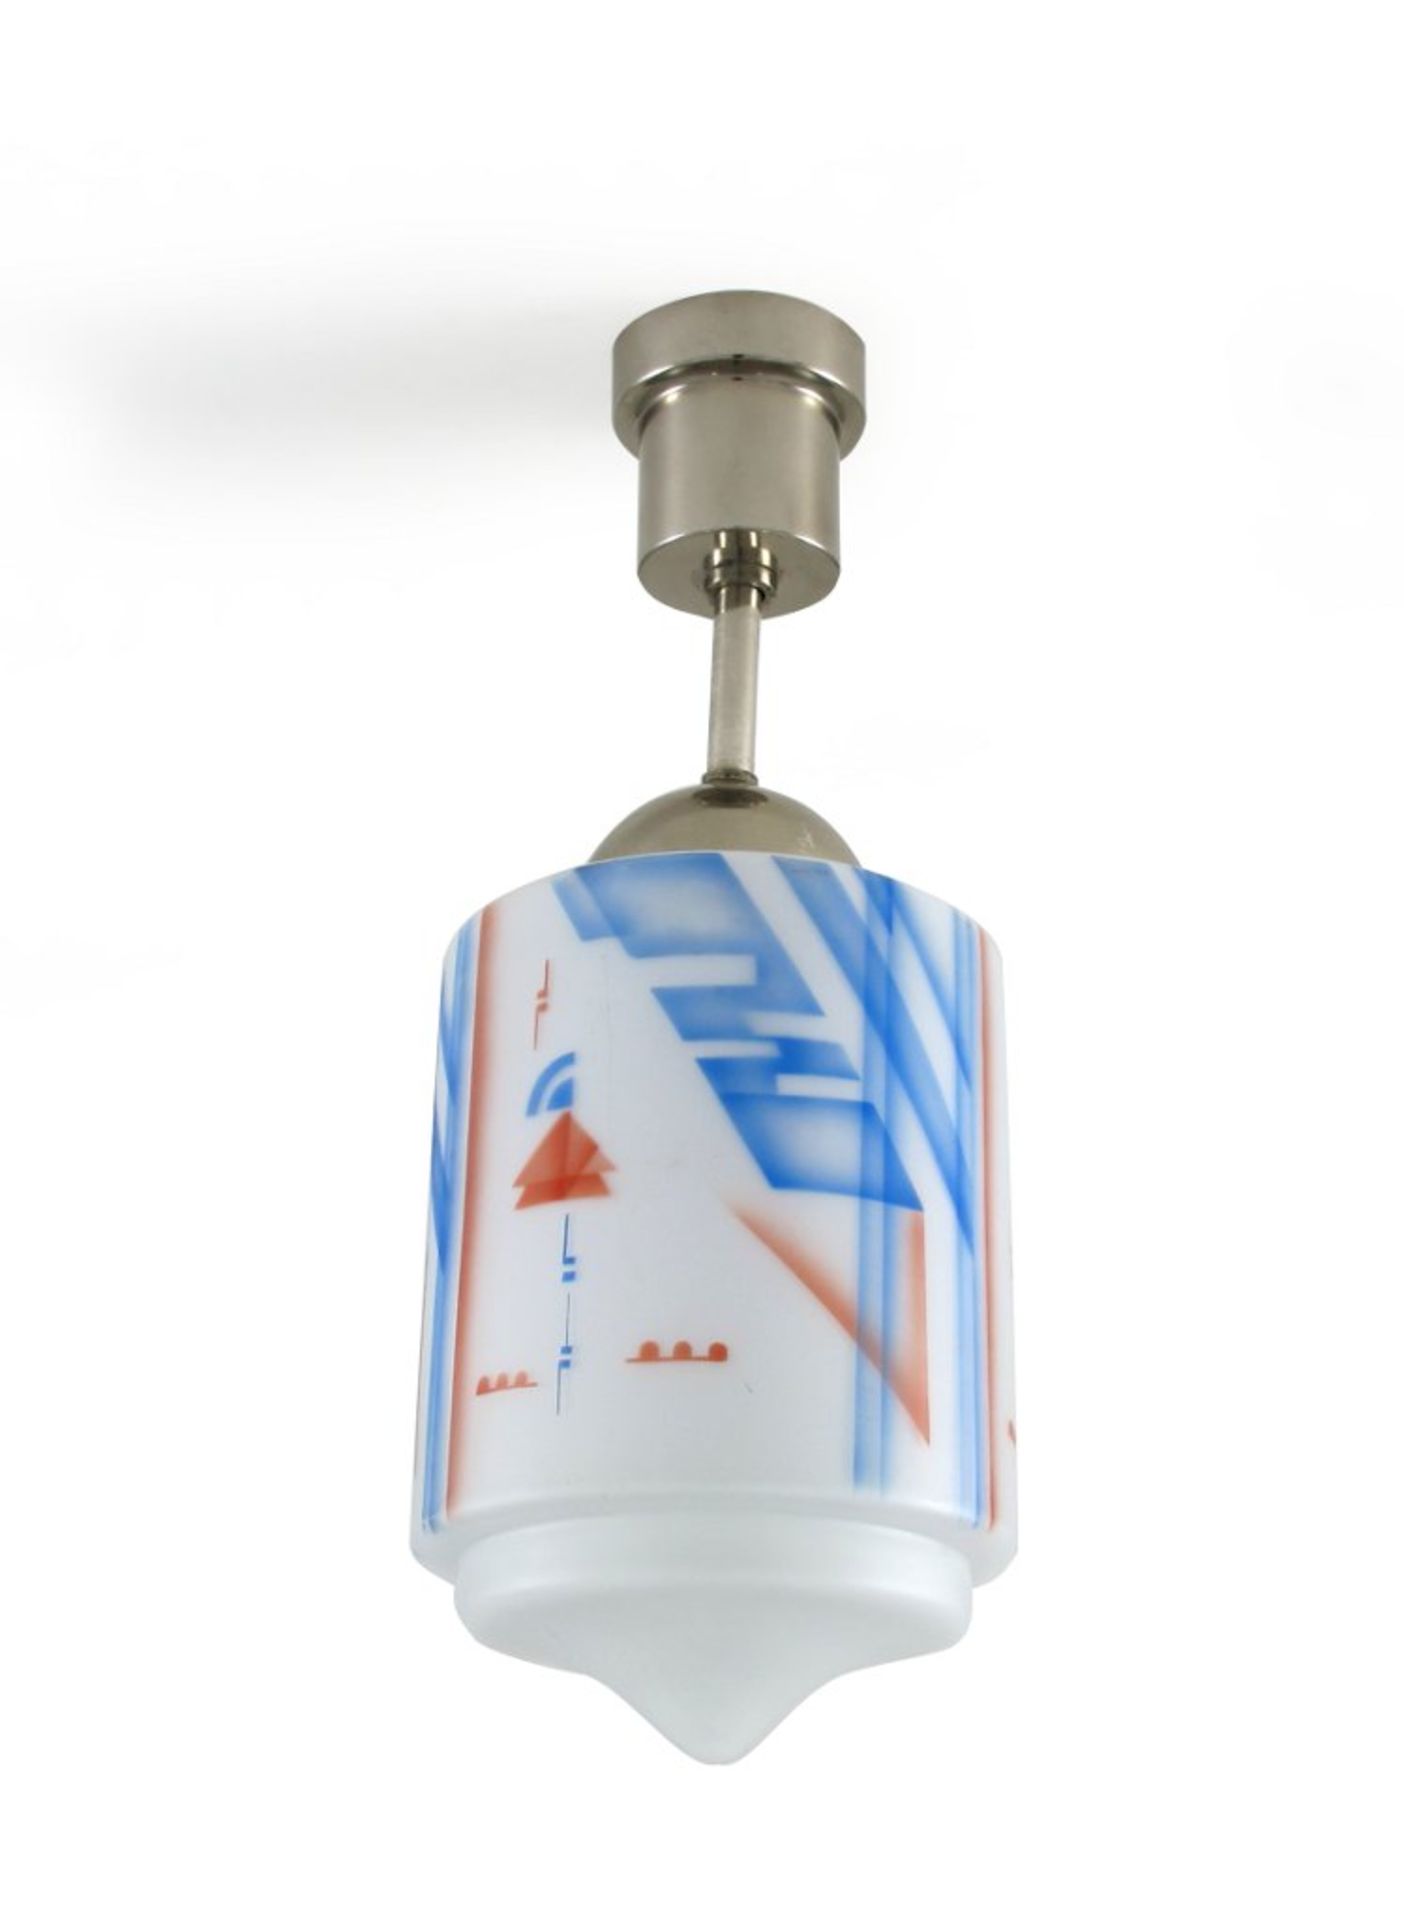 Jugendstil-/Art-Déco-Hängelampe. Zylindrischer Milchglasschirm mit graphischem Dekor.